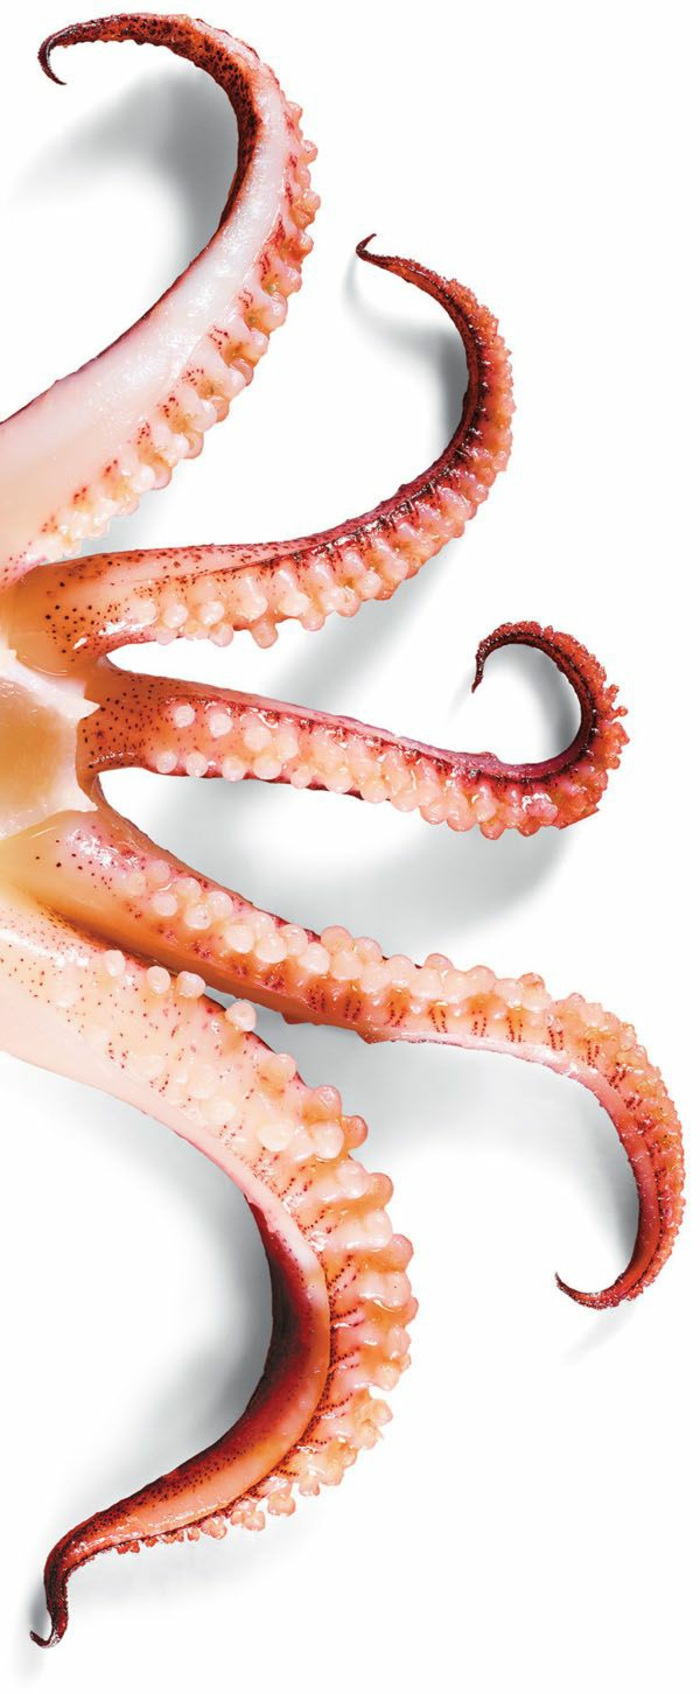 octopus koken recepten octopus bereiden exotische gerechten